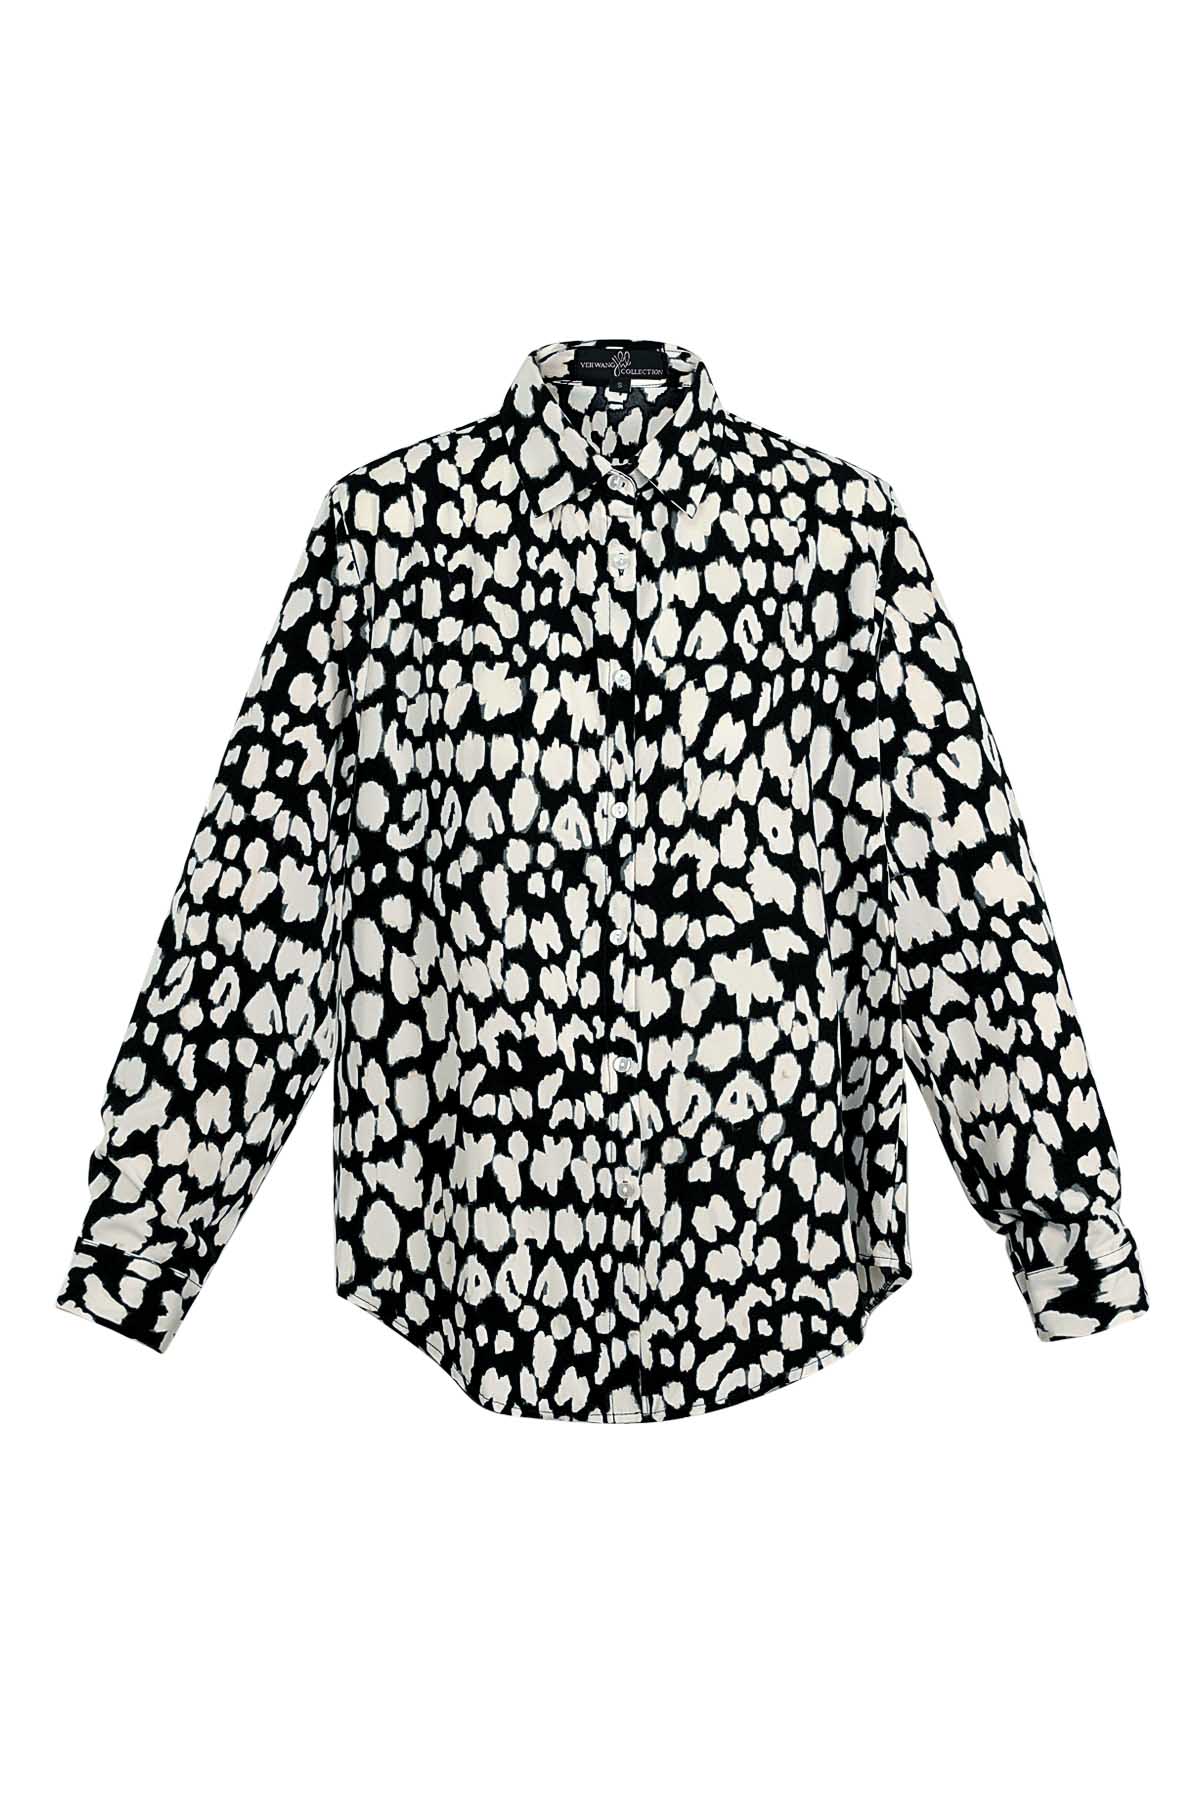 Blusa leopardata in bianco e nero h5 